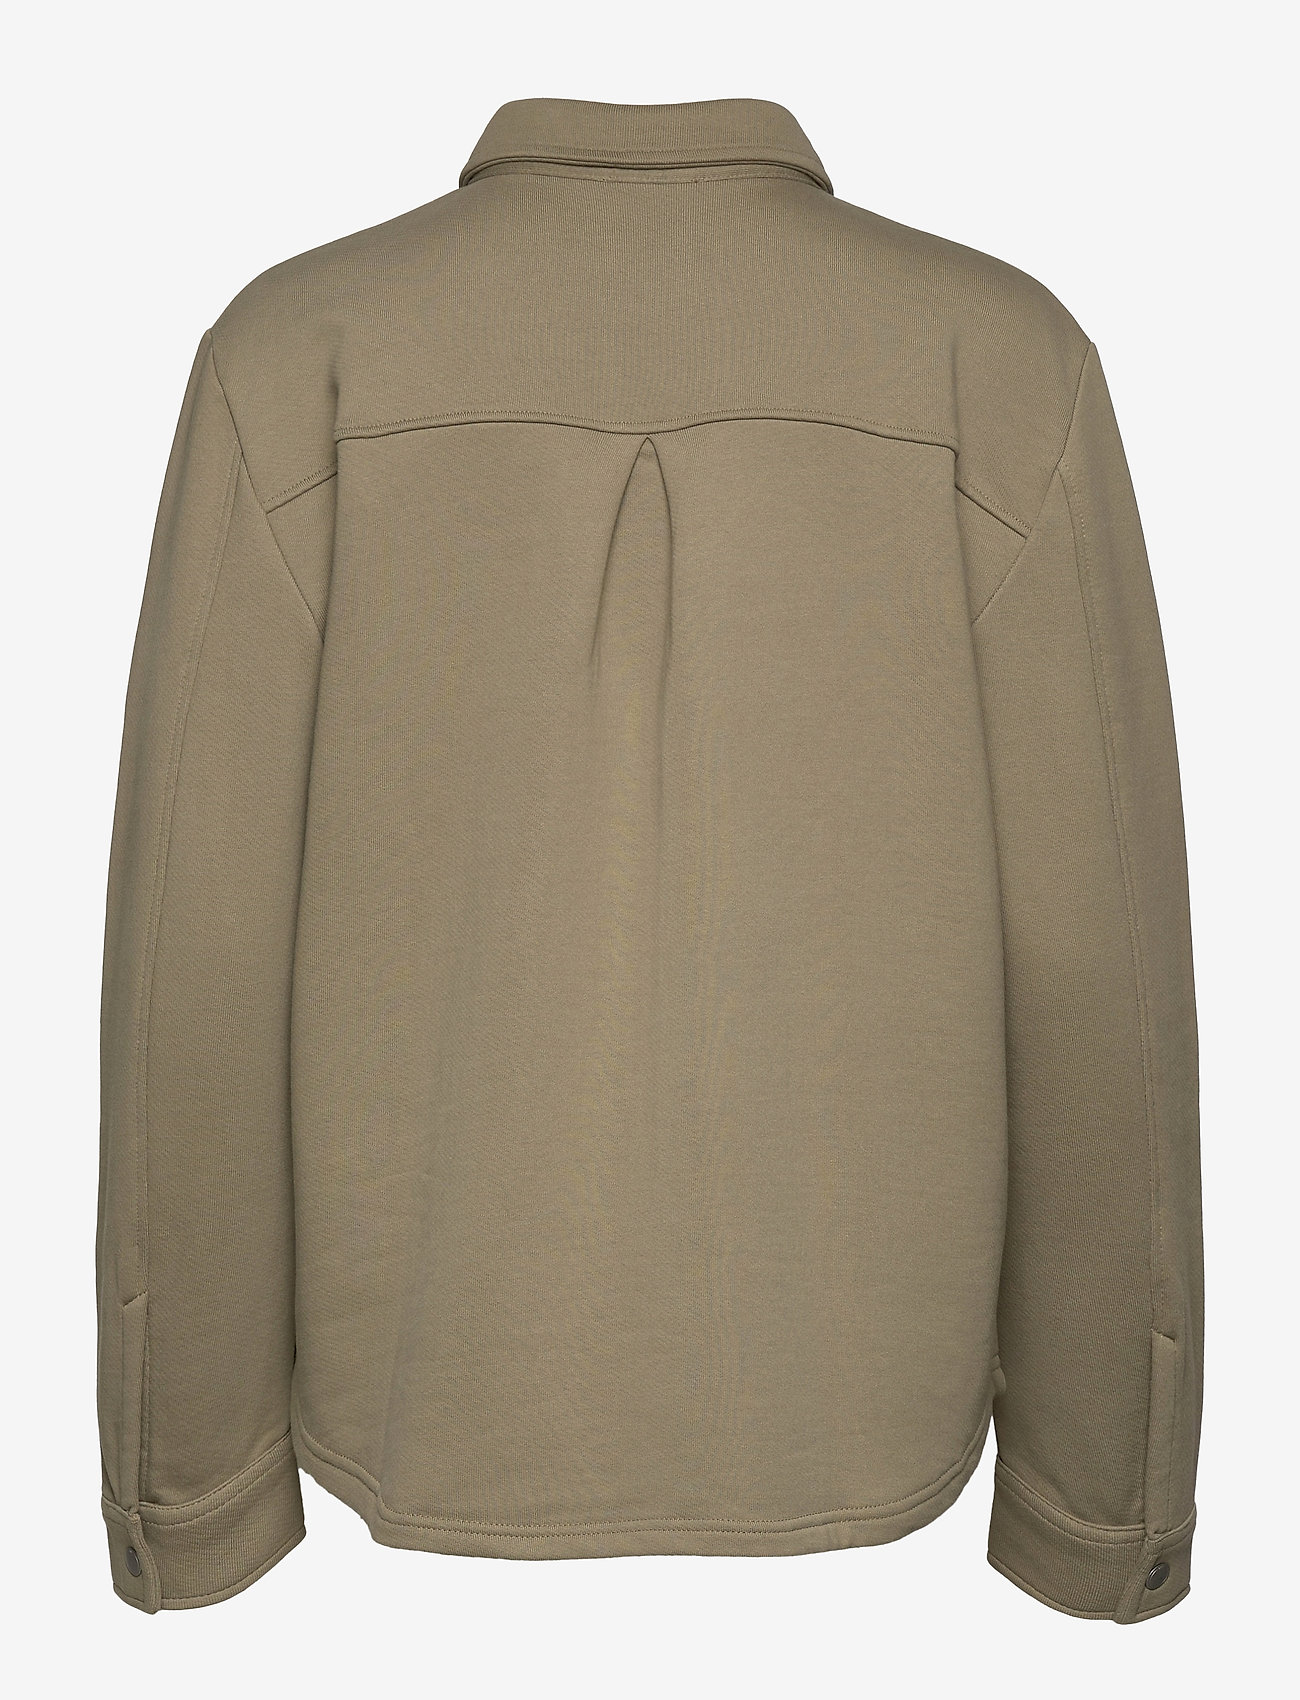 EDC by Esprit - Sweatshirts cardigan - damen - light khaki - 1